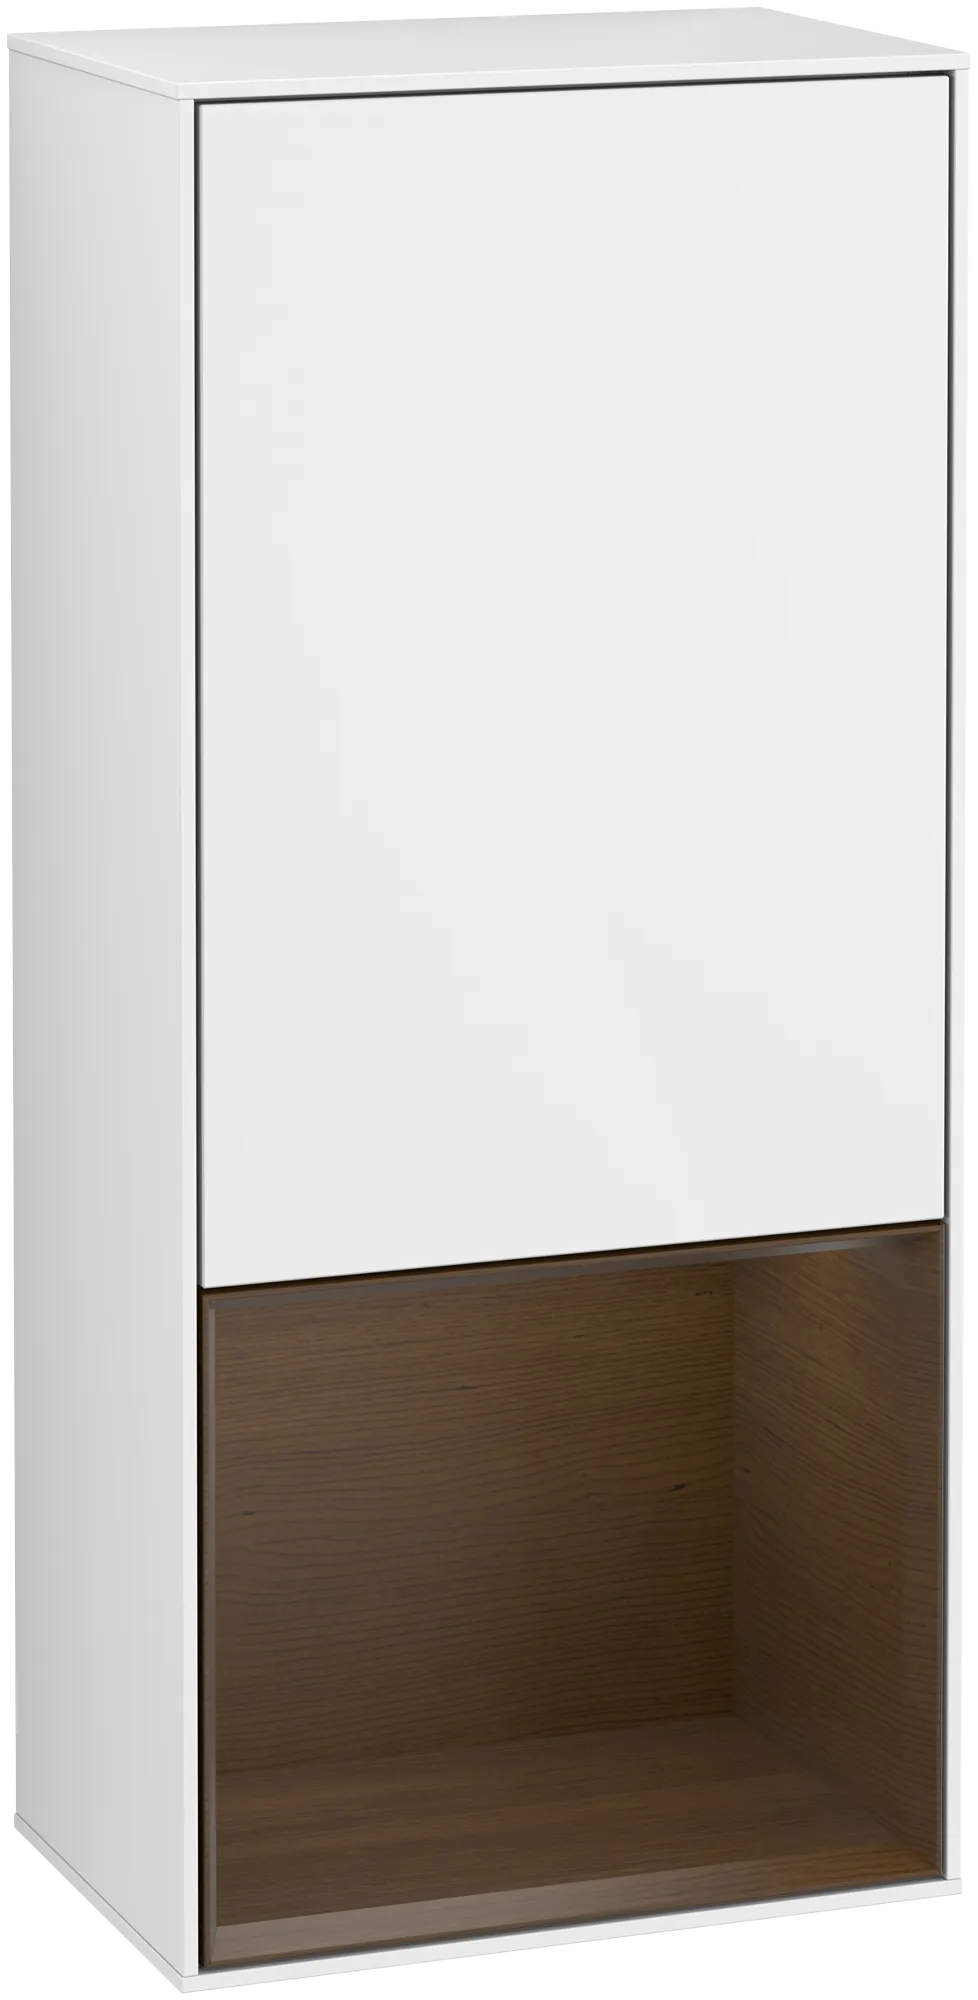 Bild von VILLEROY BOCH Finion Seitenschrank, mit Beleuchtung, 1 Tür, 418 x 936 x 270 mm, Glossy White Lacquer / Walnut Veneer #G540GNGF